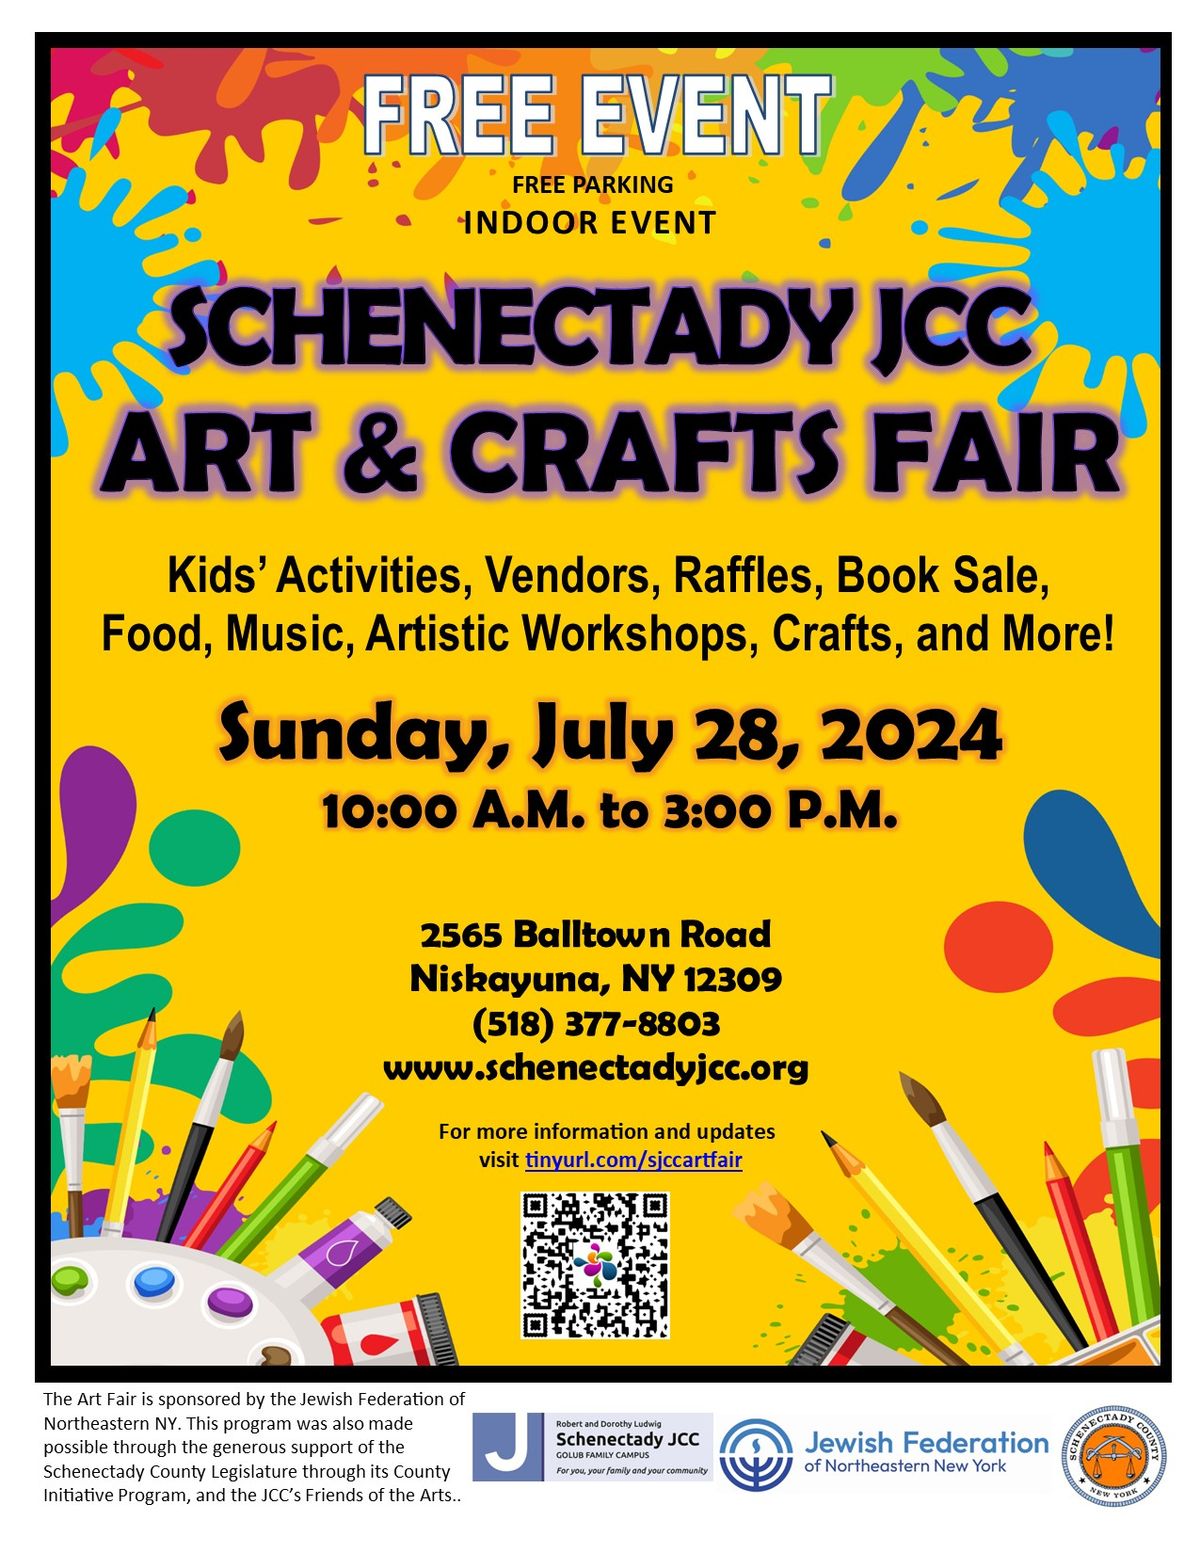 Schenectady JCC Art & Crafts Fair 